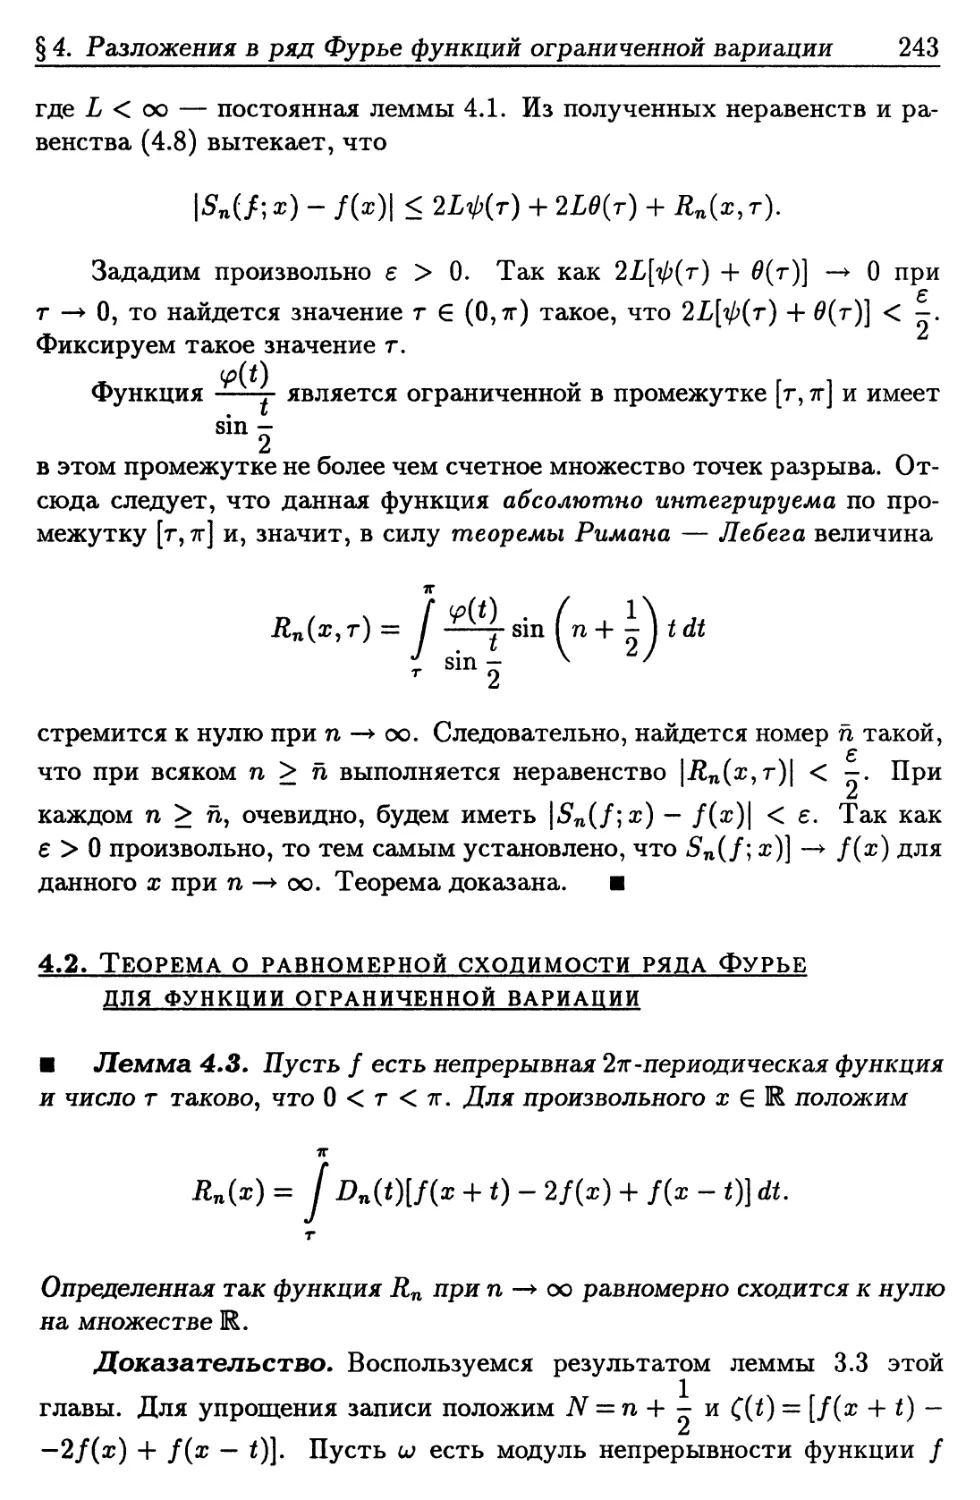 4.2. Теорема о равномерной сходимости ряда Фурье для функции ограниченной вариации